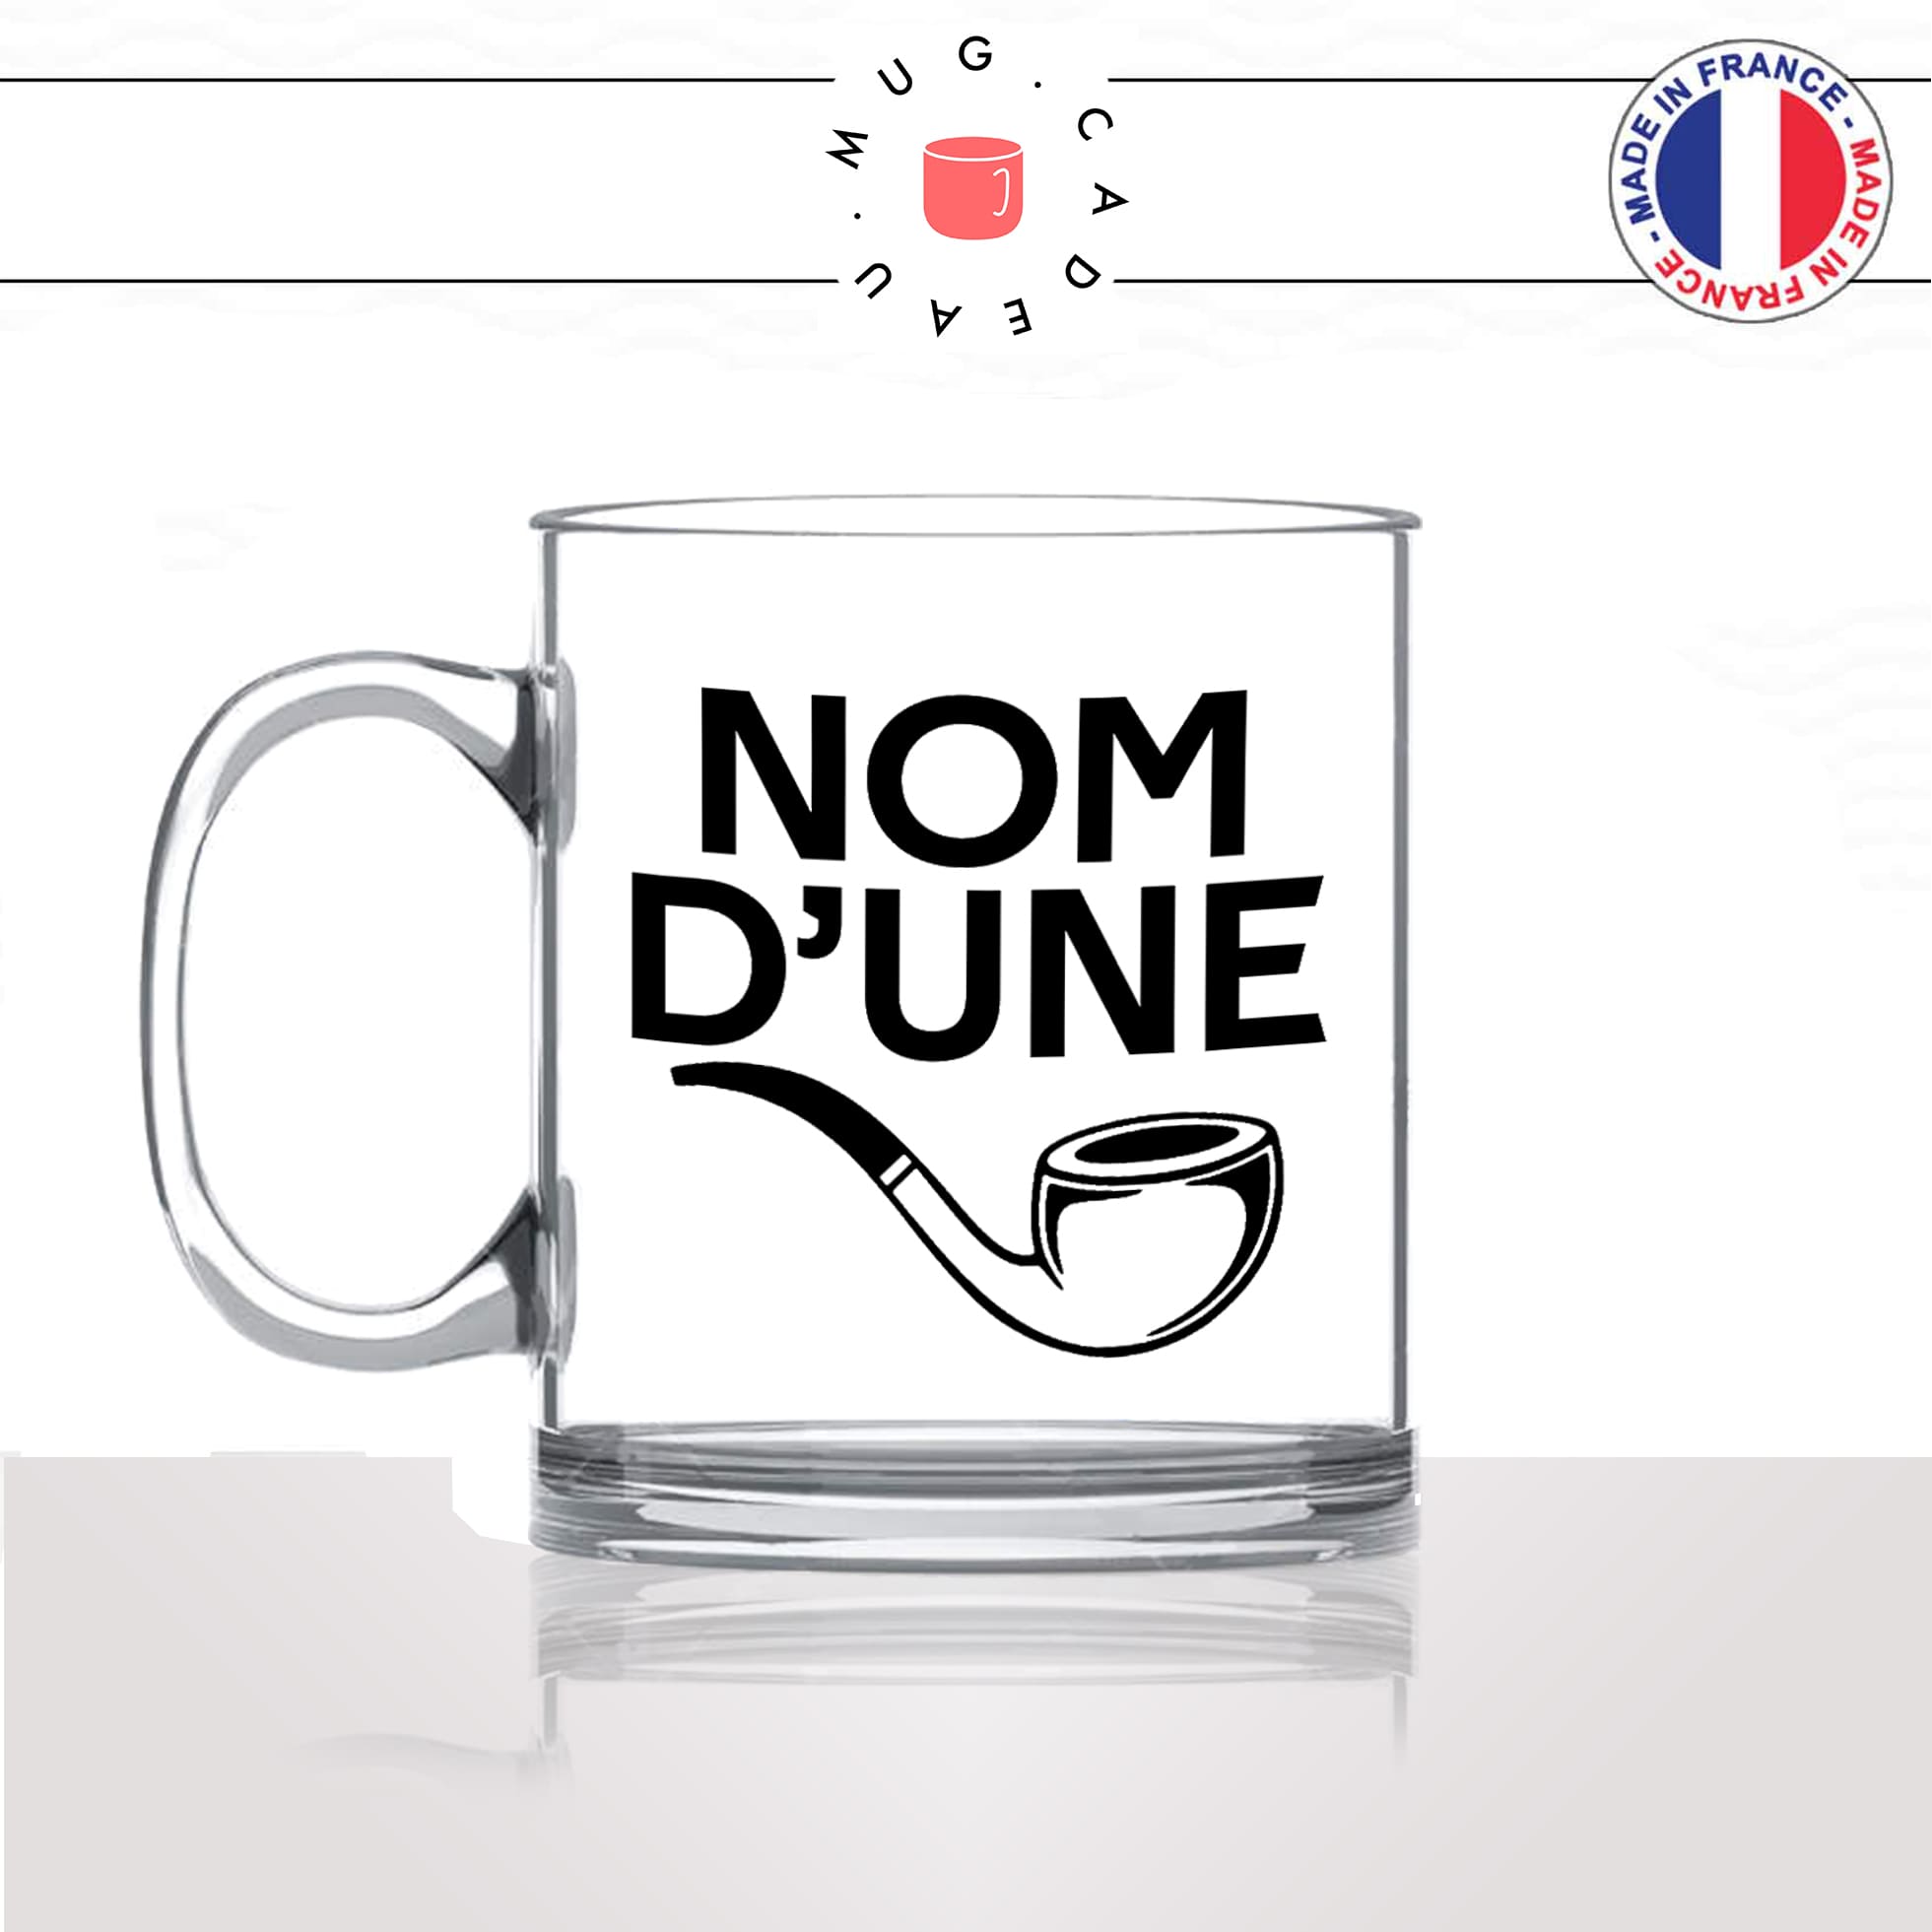 mug-tasse-en-verre-transparent-glass-nom-dune-pipe-expression-francaise-putin-fumer-fumeur-moustache-humour-fun-idée-cadeau-originale